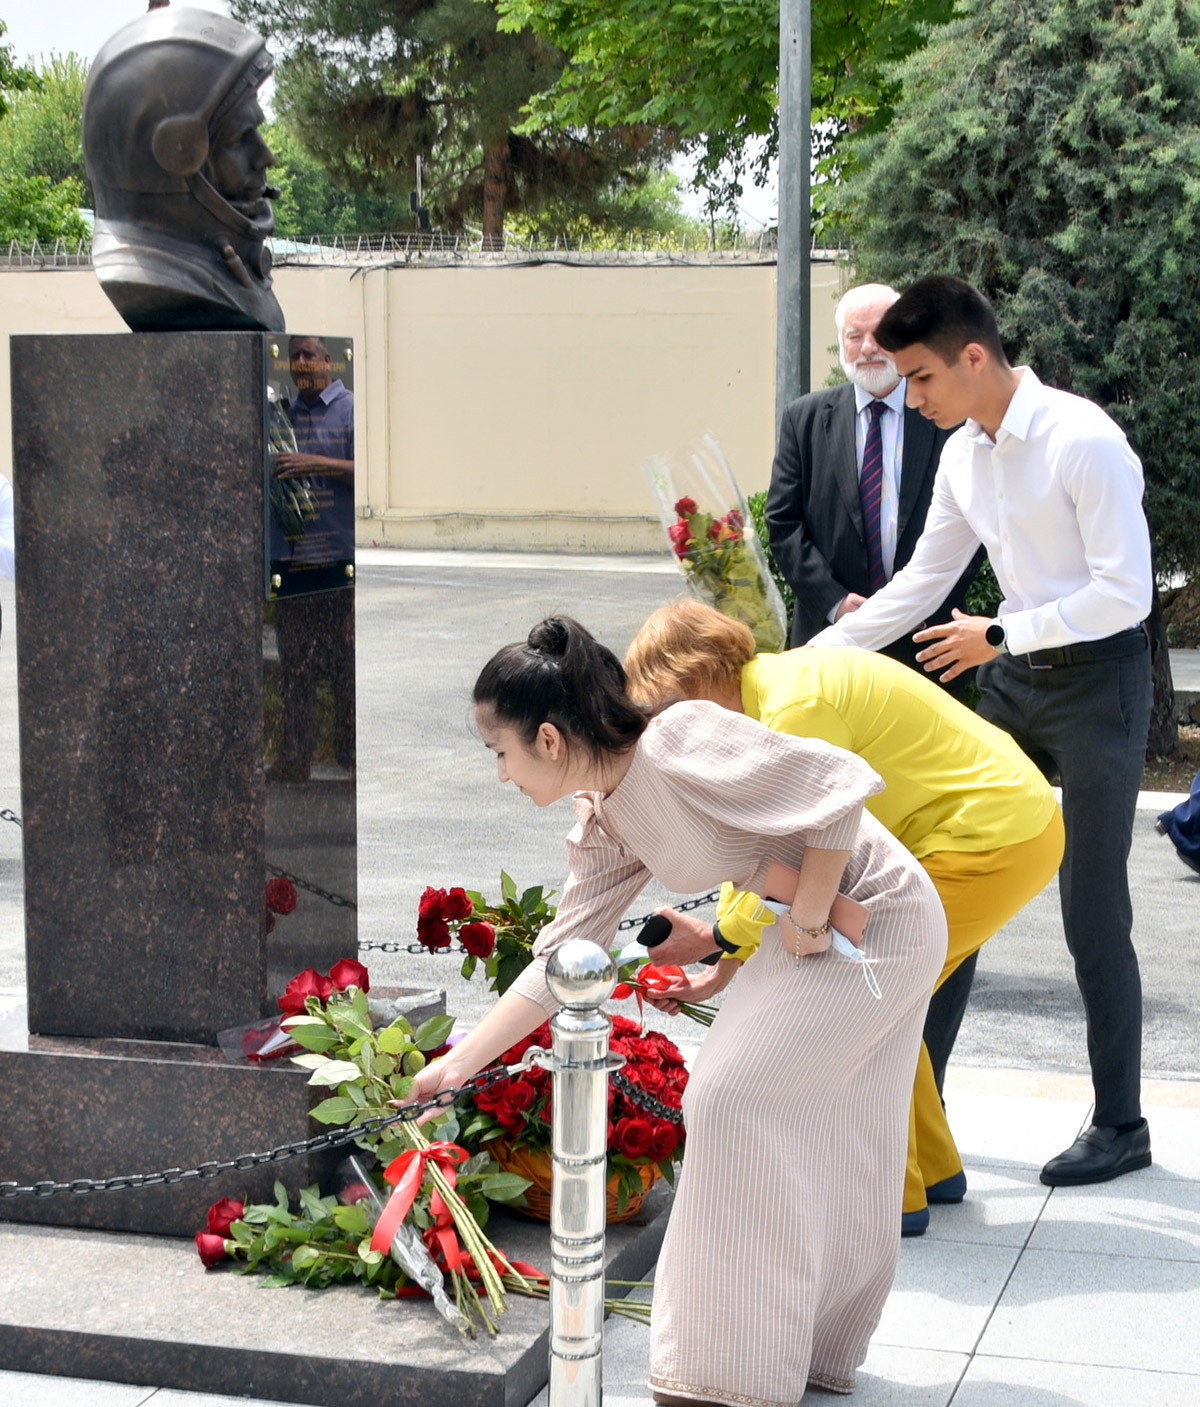 В Ашхабаде торжественно открыли памятник Юрию Гагарину